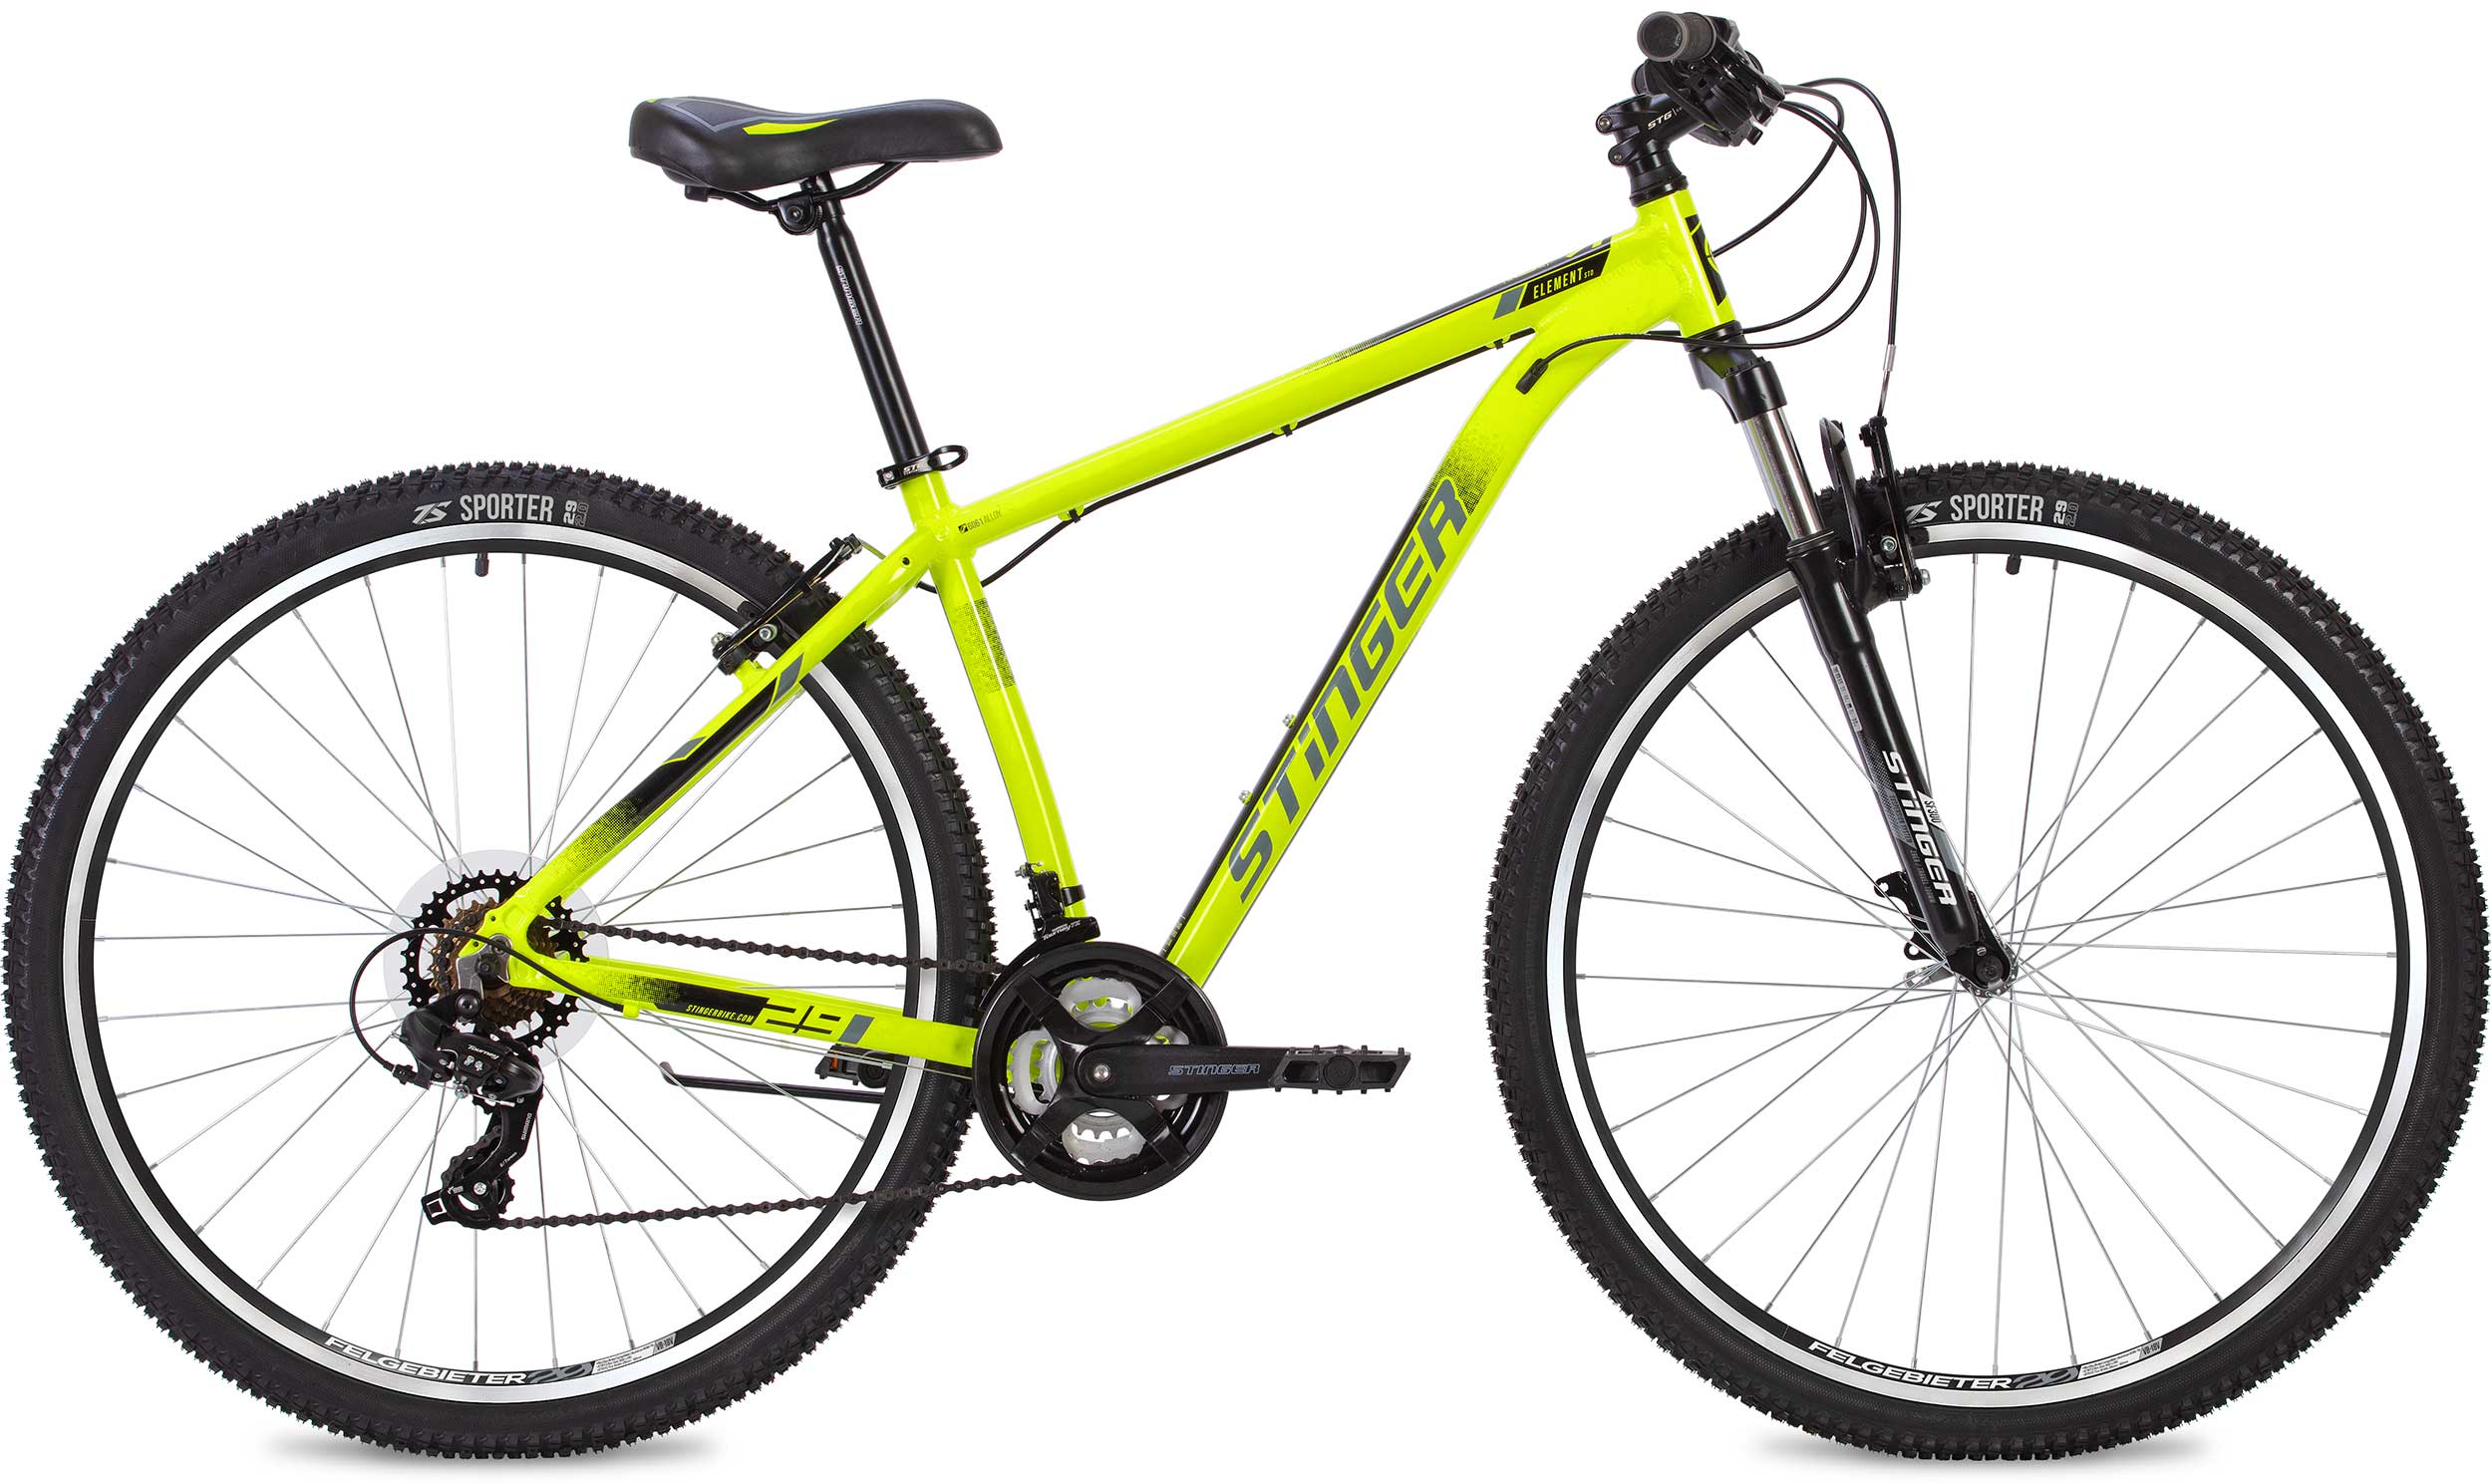  Отзывы о Горном велосипеде Stinger Element STD 27 2020